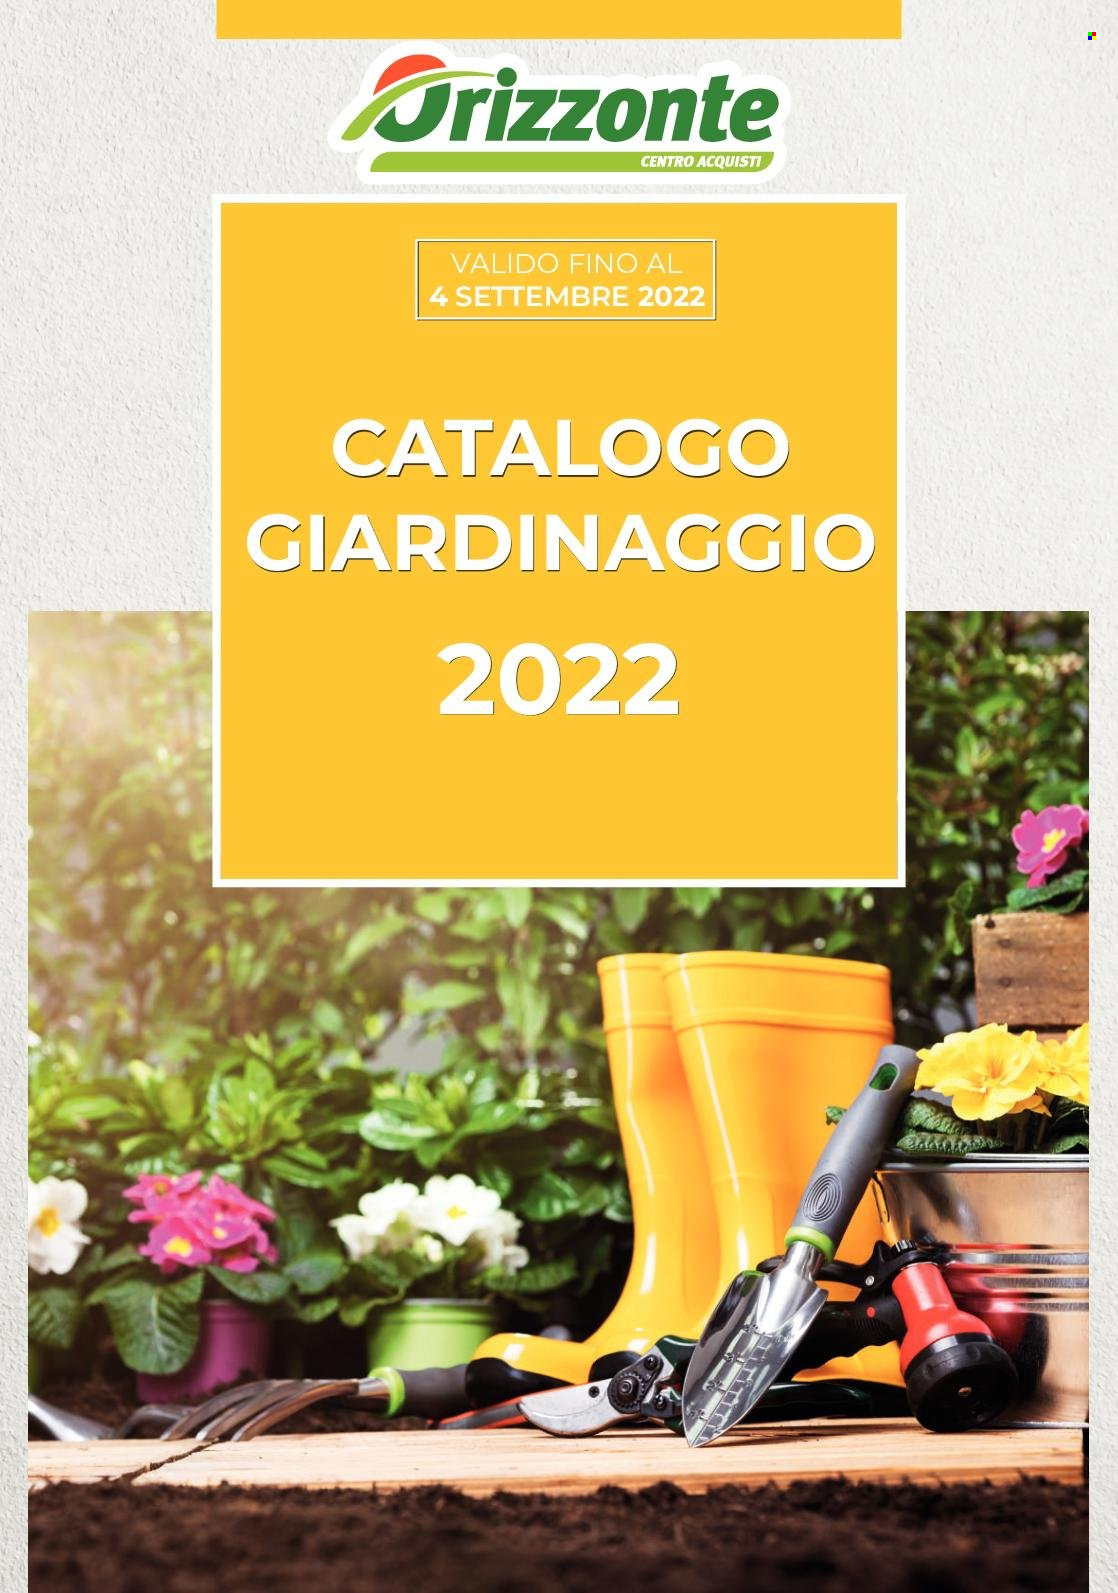 Volantino Orizzonte - 12.6.2022 - 4.9.2022.